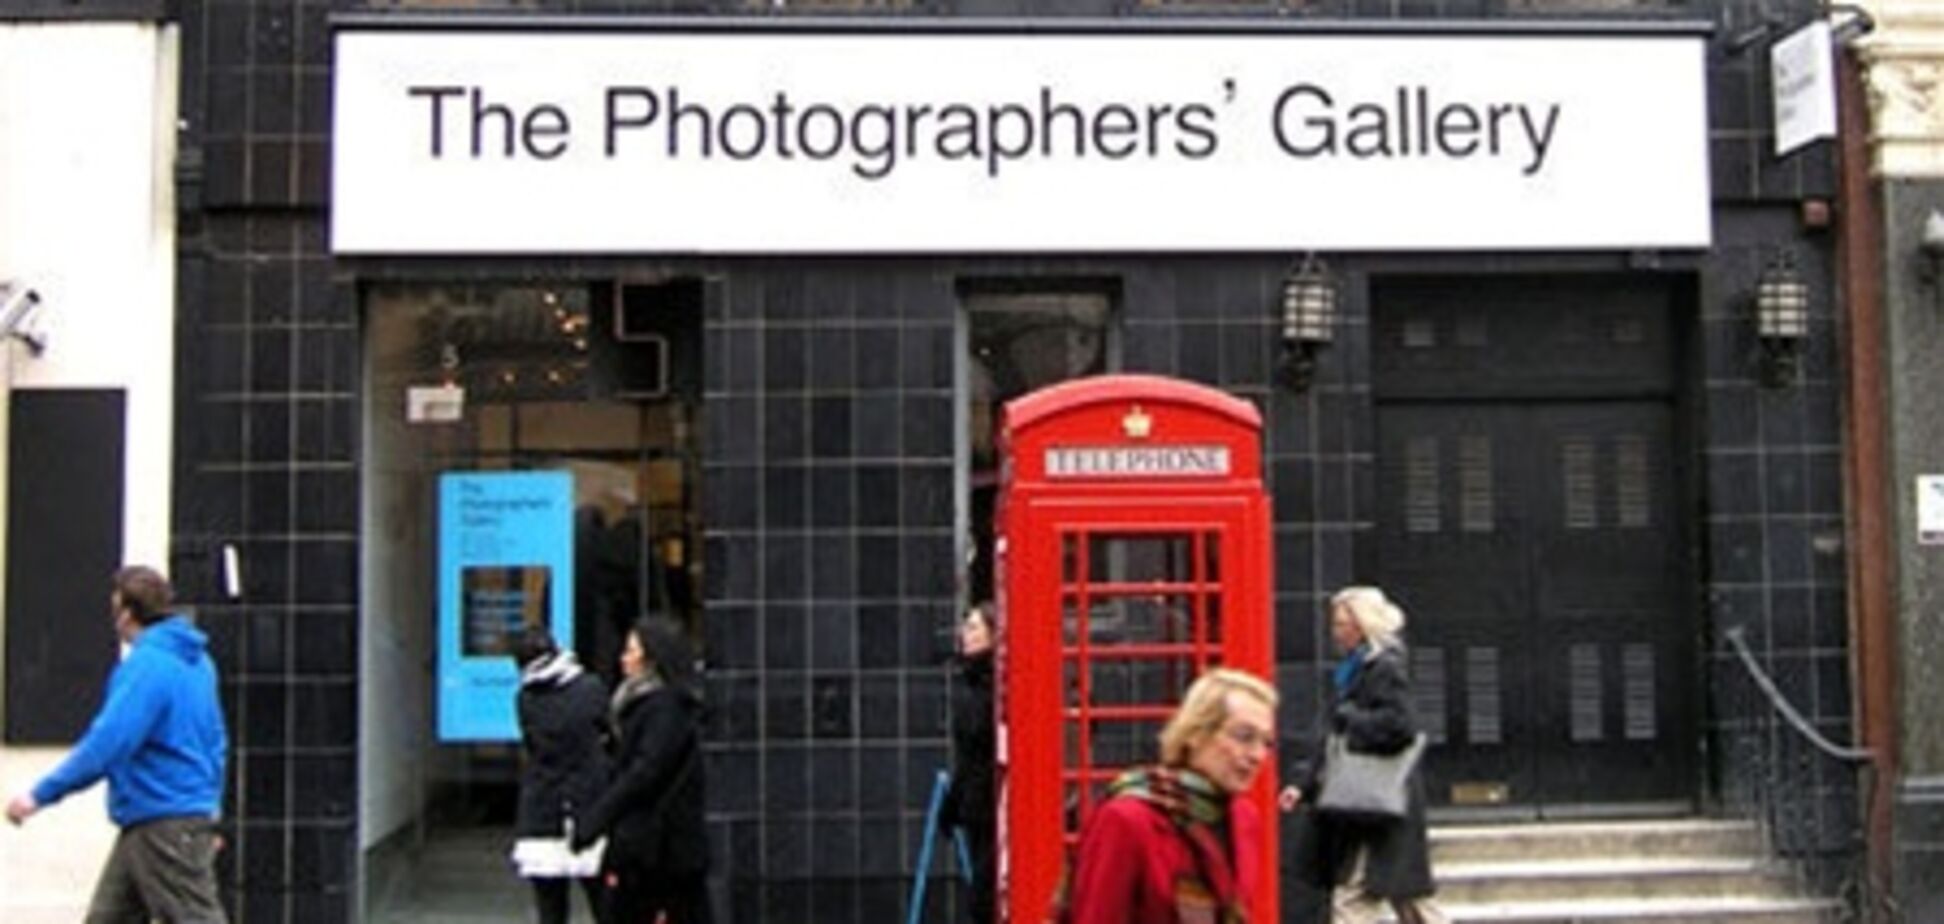 Галерея фотографов в Лондоне открыта после реставрации